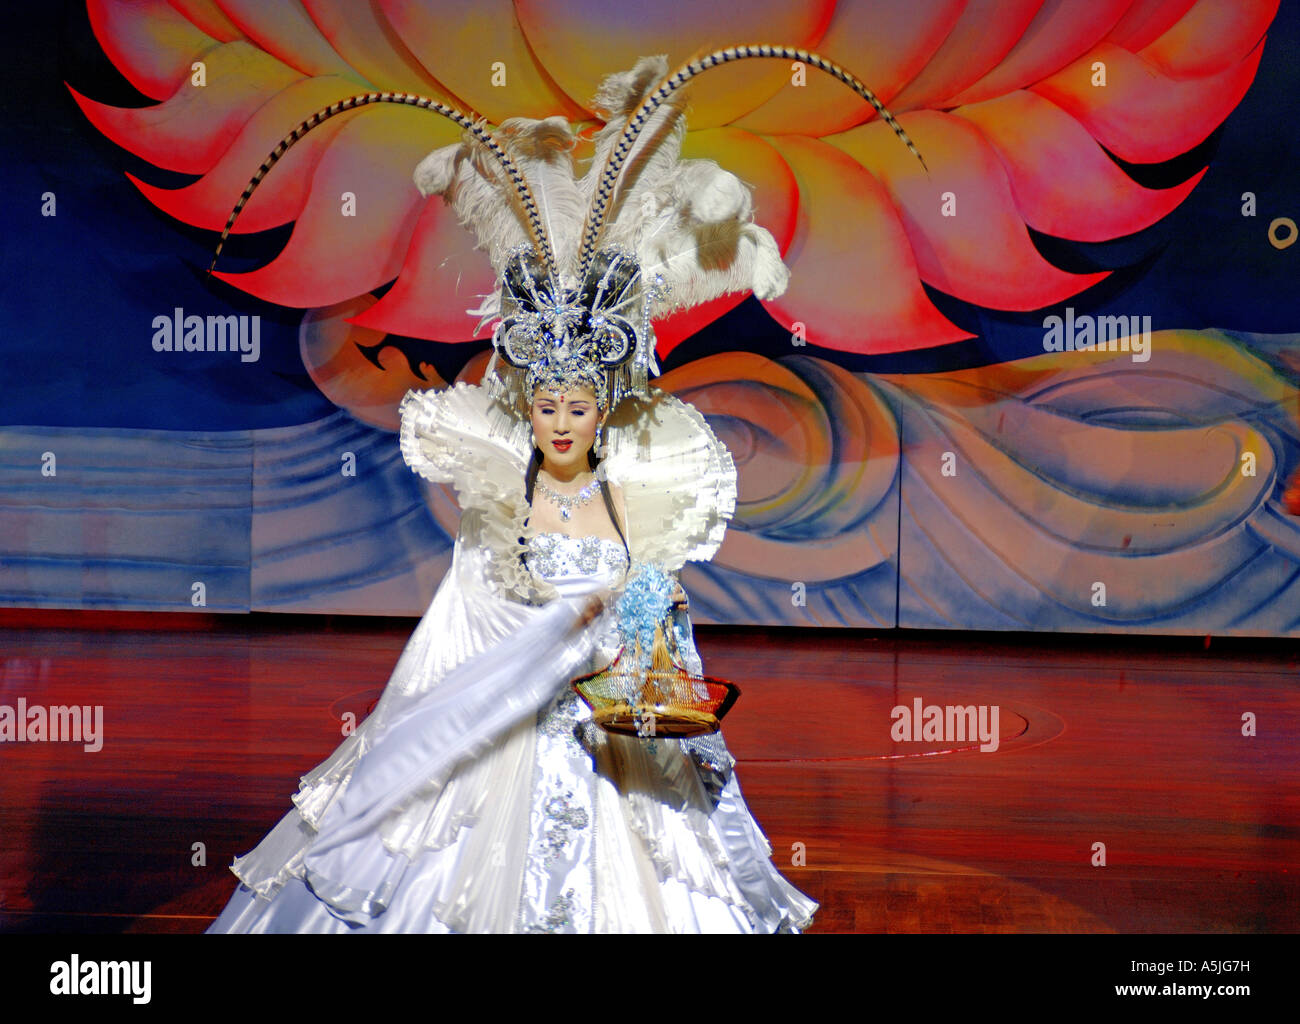 Une femme dansant sur scène pendant le spectacle Alcazar à Bangkok Thaïlande Asie du Sud-est Banque D'Images